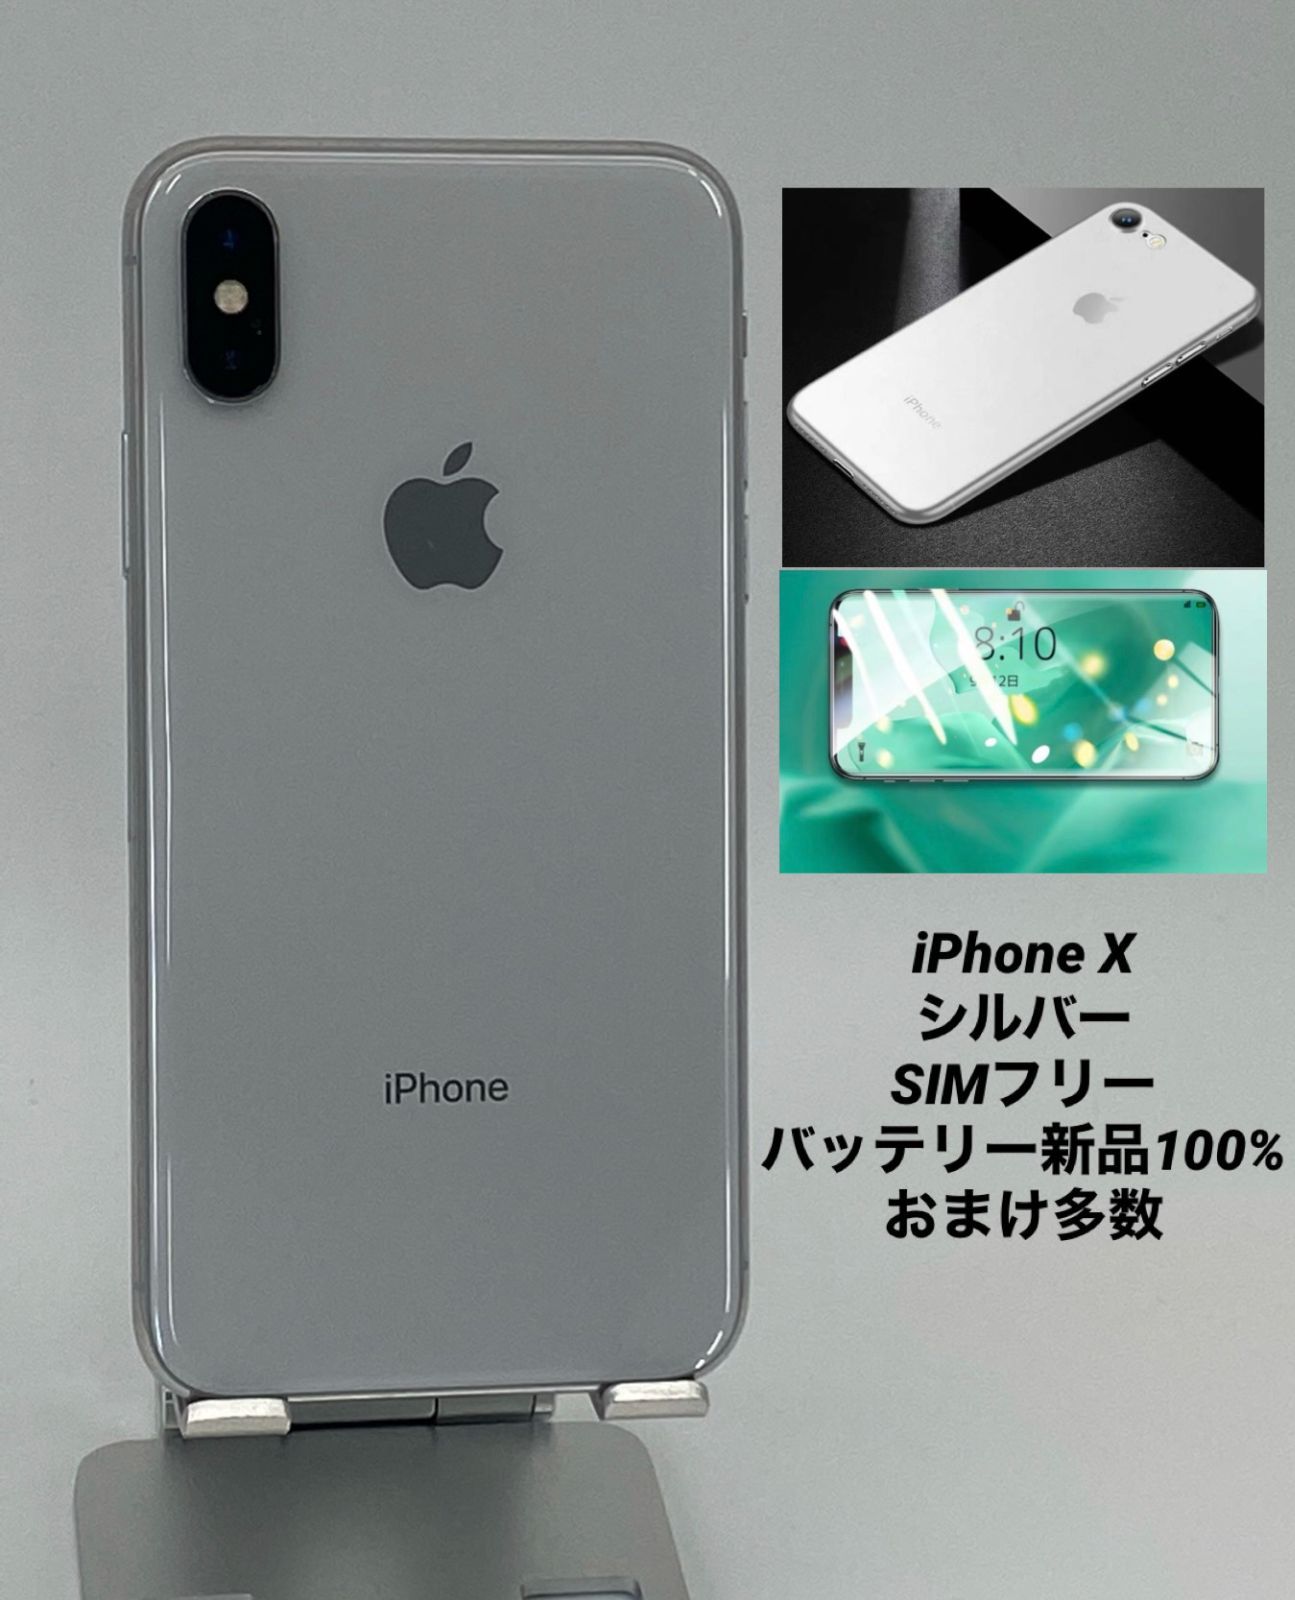 iPhoneX 256GB シルバー - 神奈川県の携帯電話/スマホ